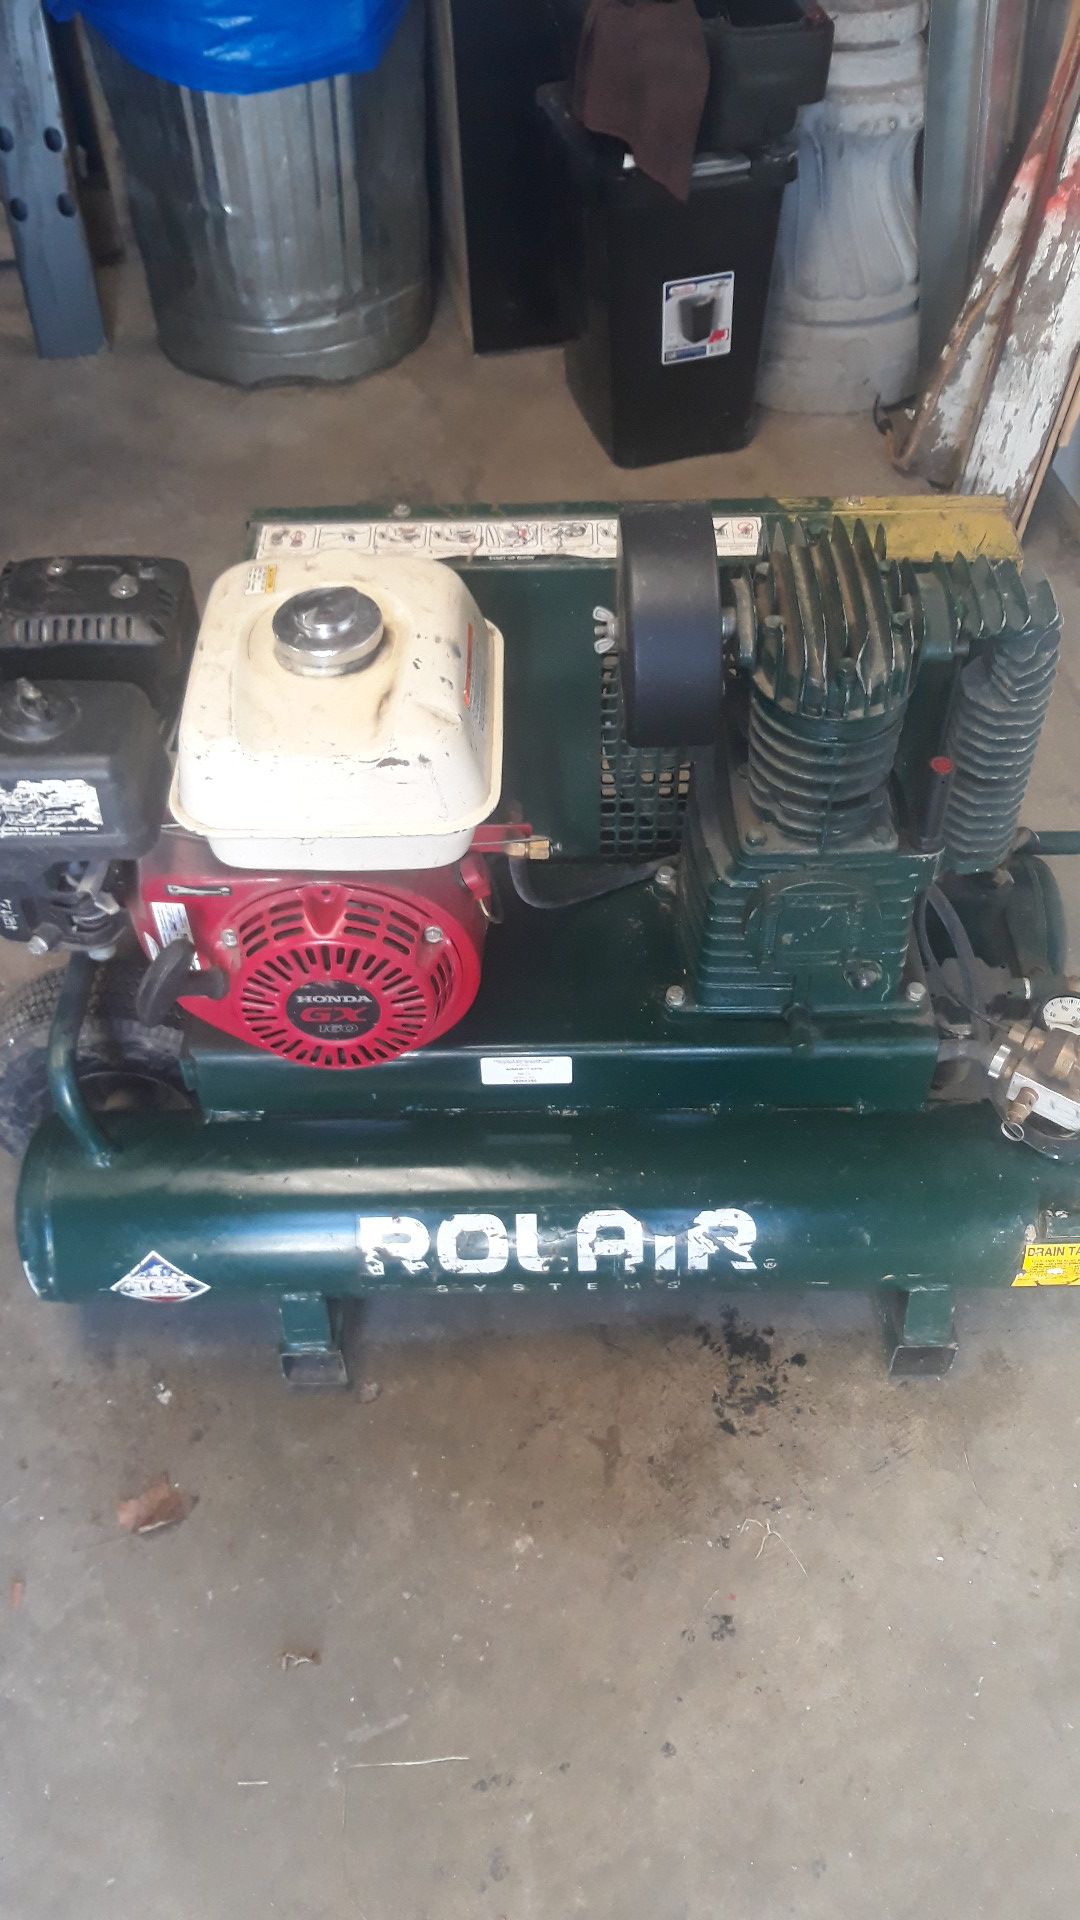 Rolair Honda gx 160 gas powered air compressor